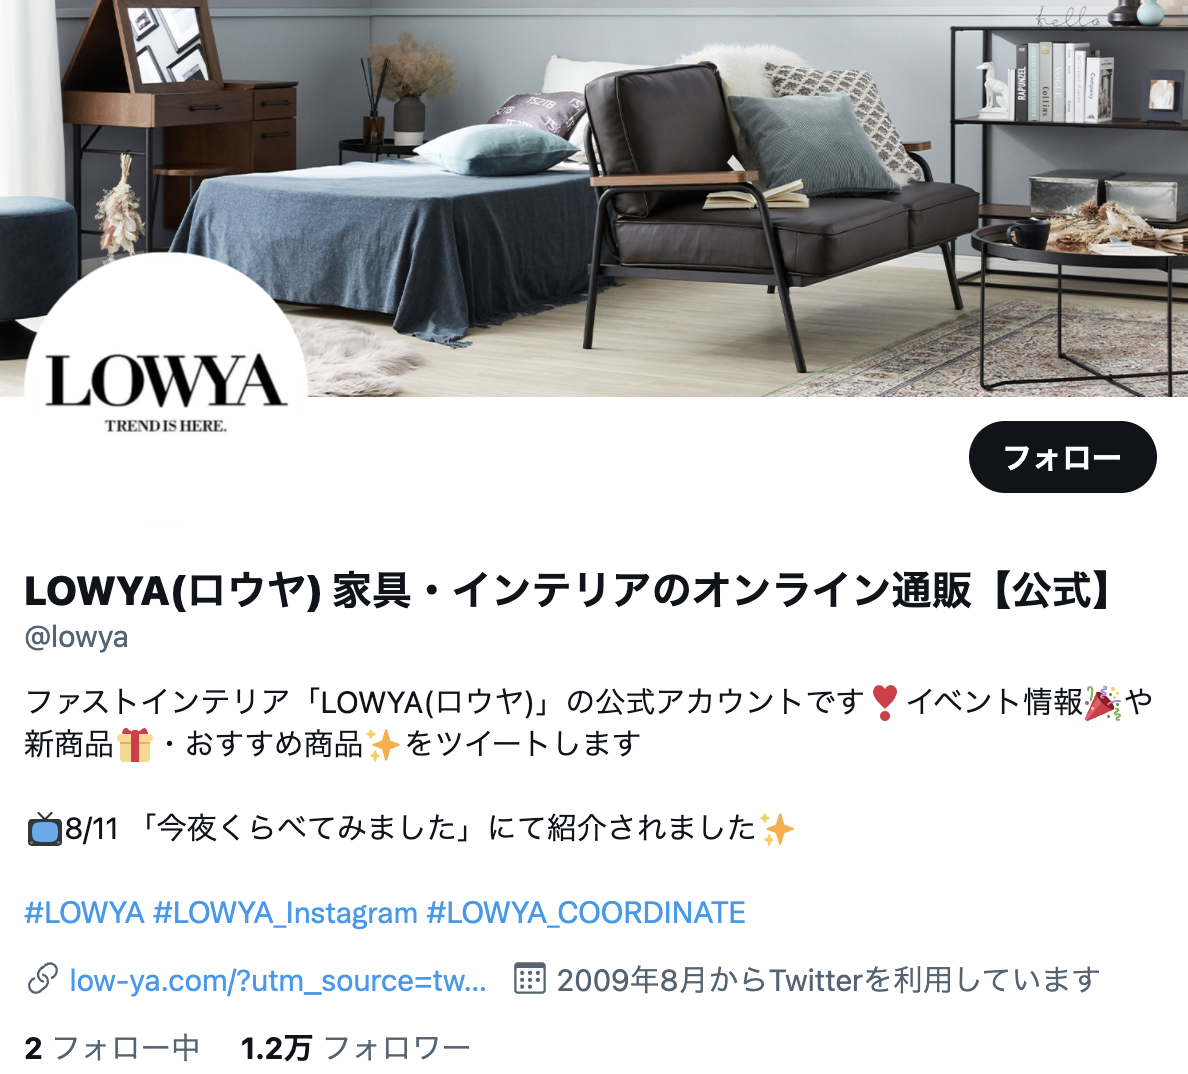 lowya-twitter-top